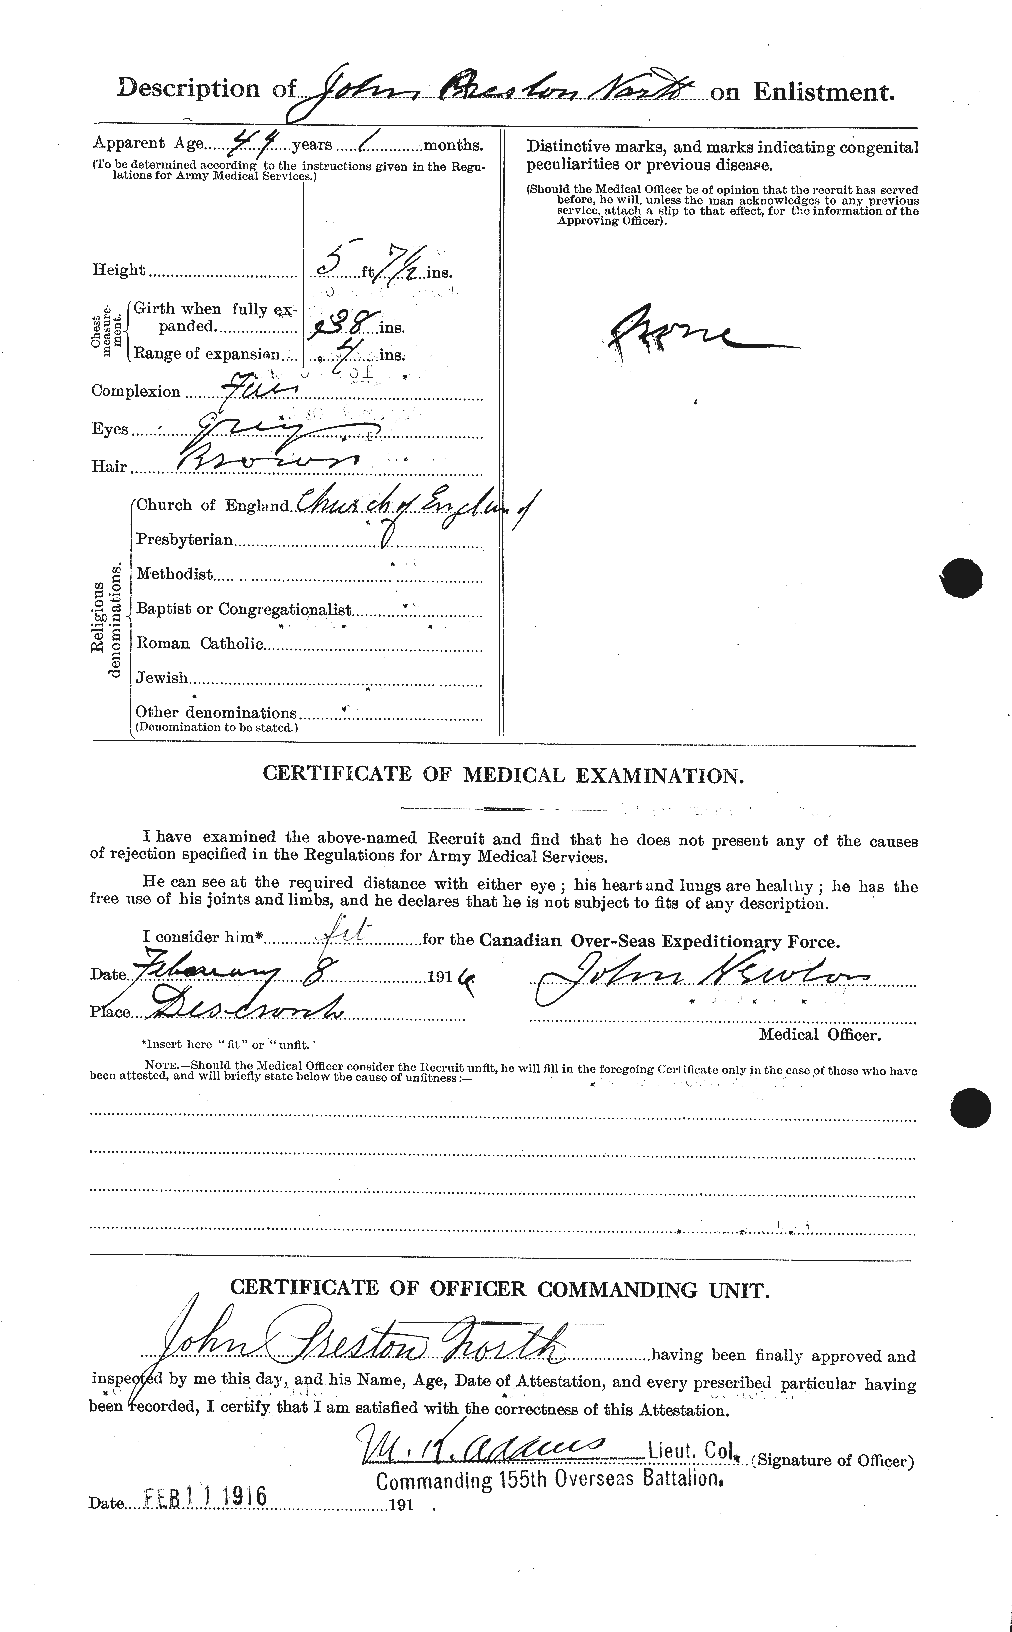 Dossiers du Personnel de la Première Guerre mondiale - CEC 549914b